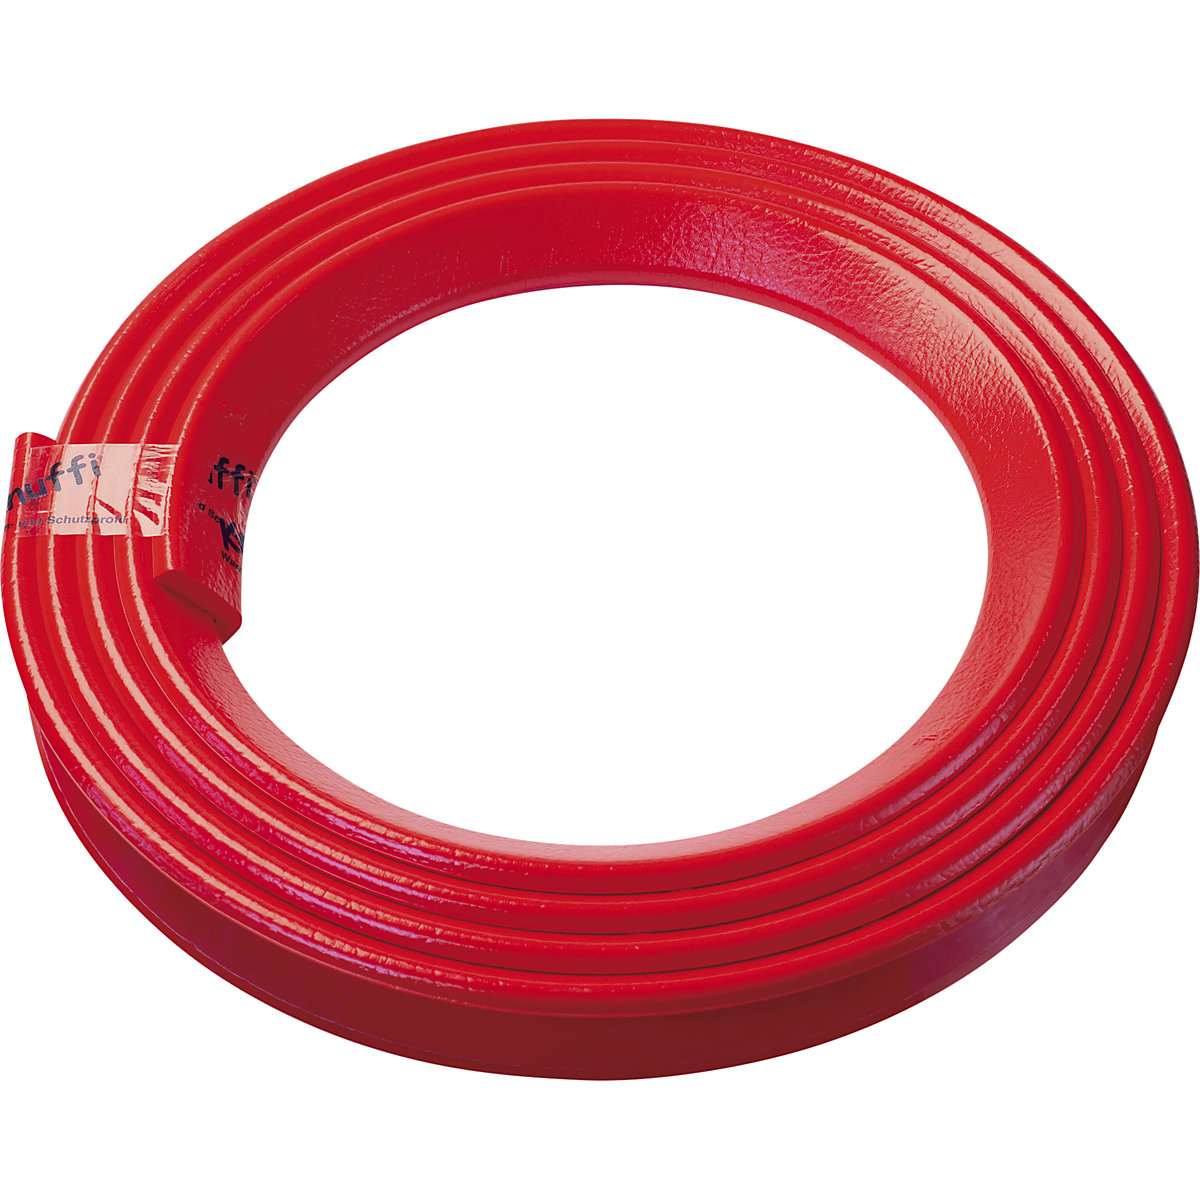 Knuffi® sarokvédő – SHG, H típus, 1 db 5 m-es tekercs, piros-11